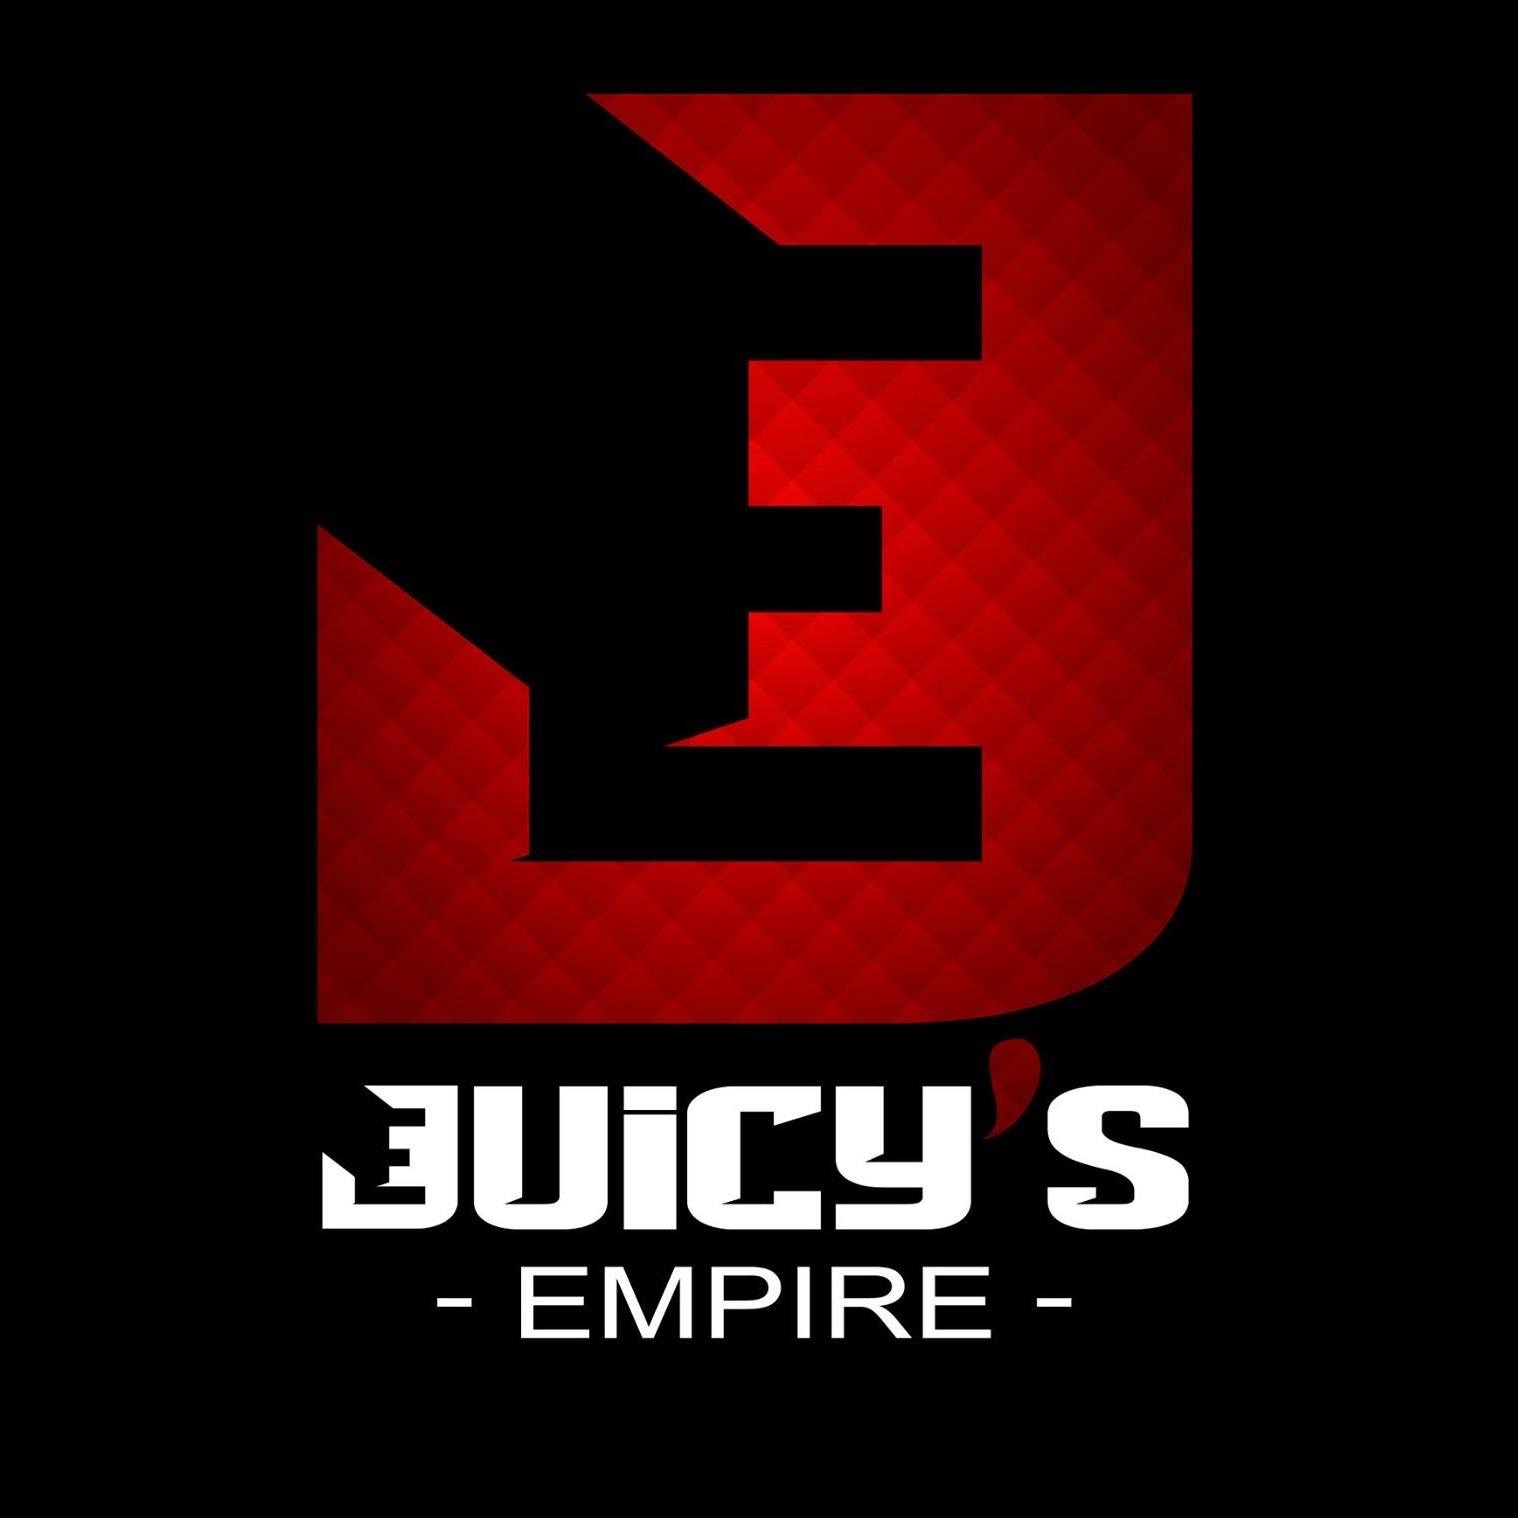 Juicy's Empire